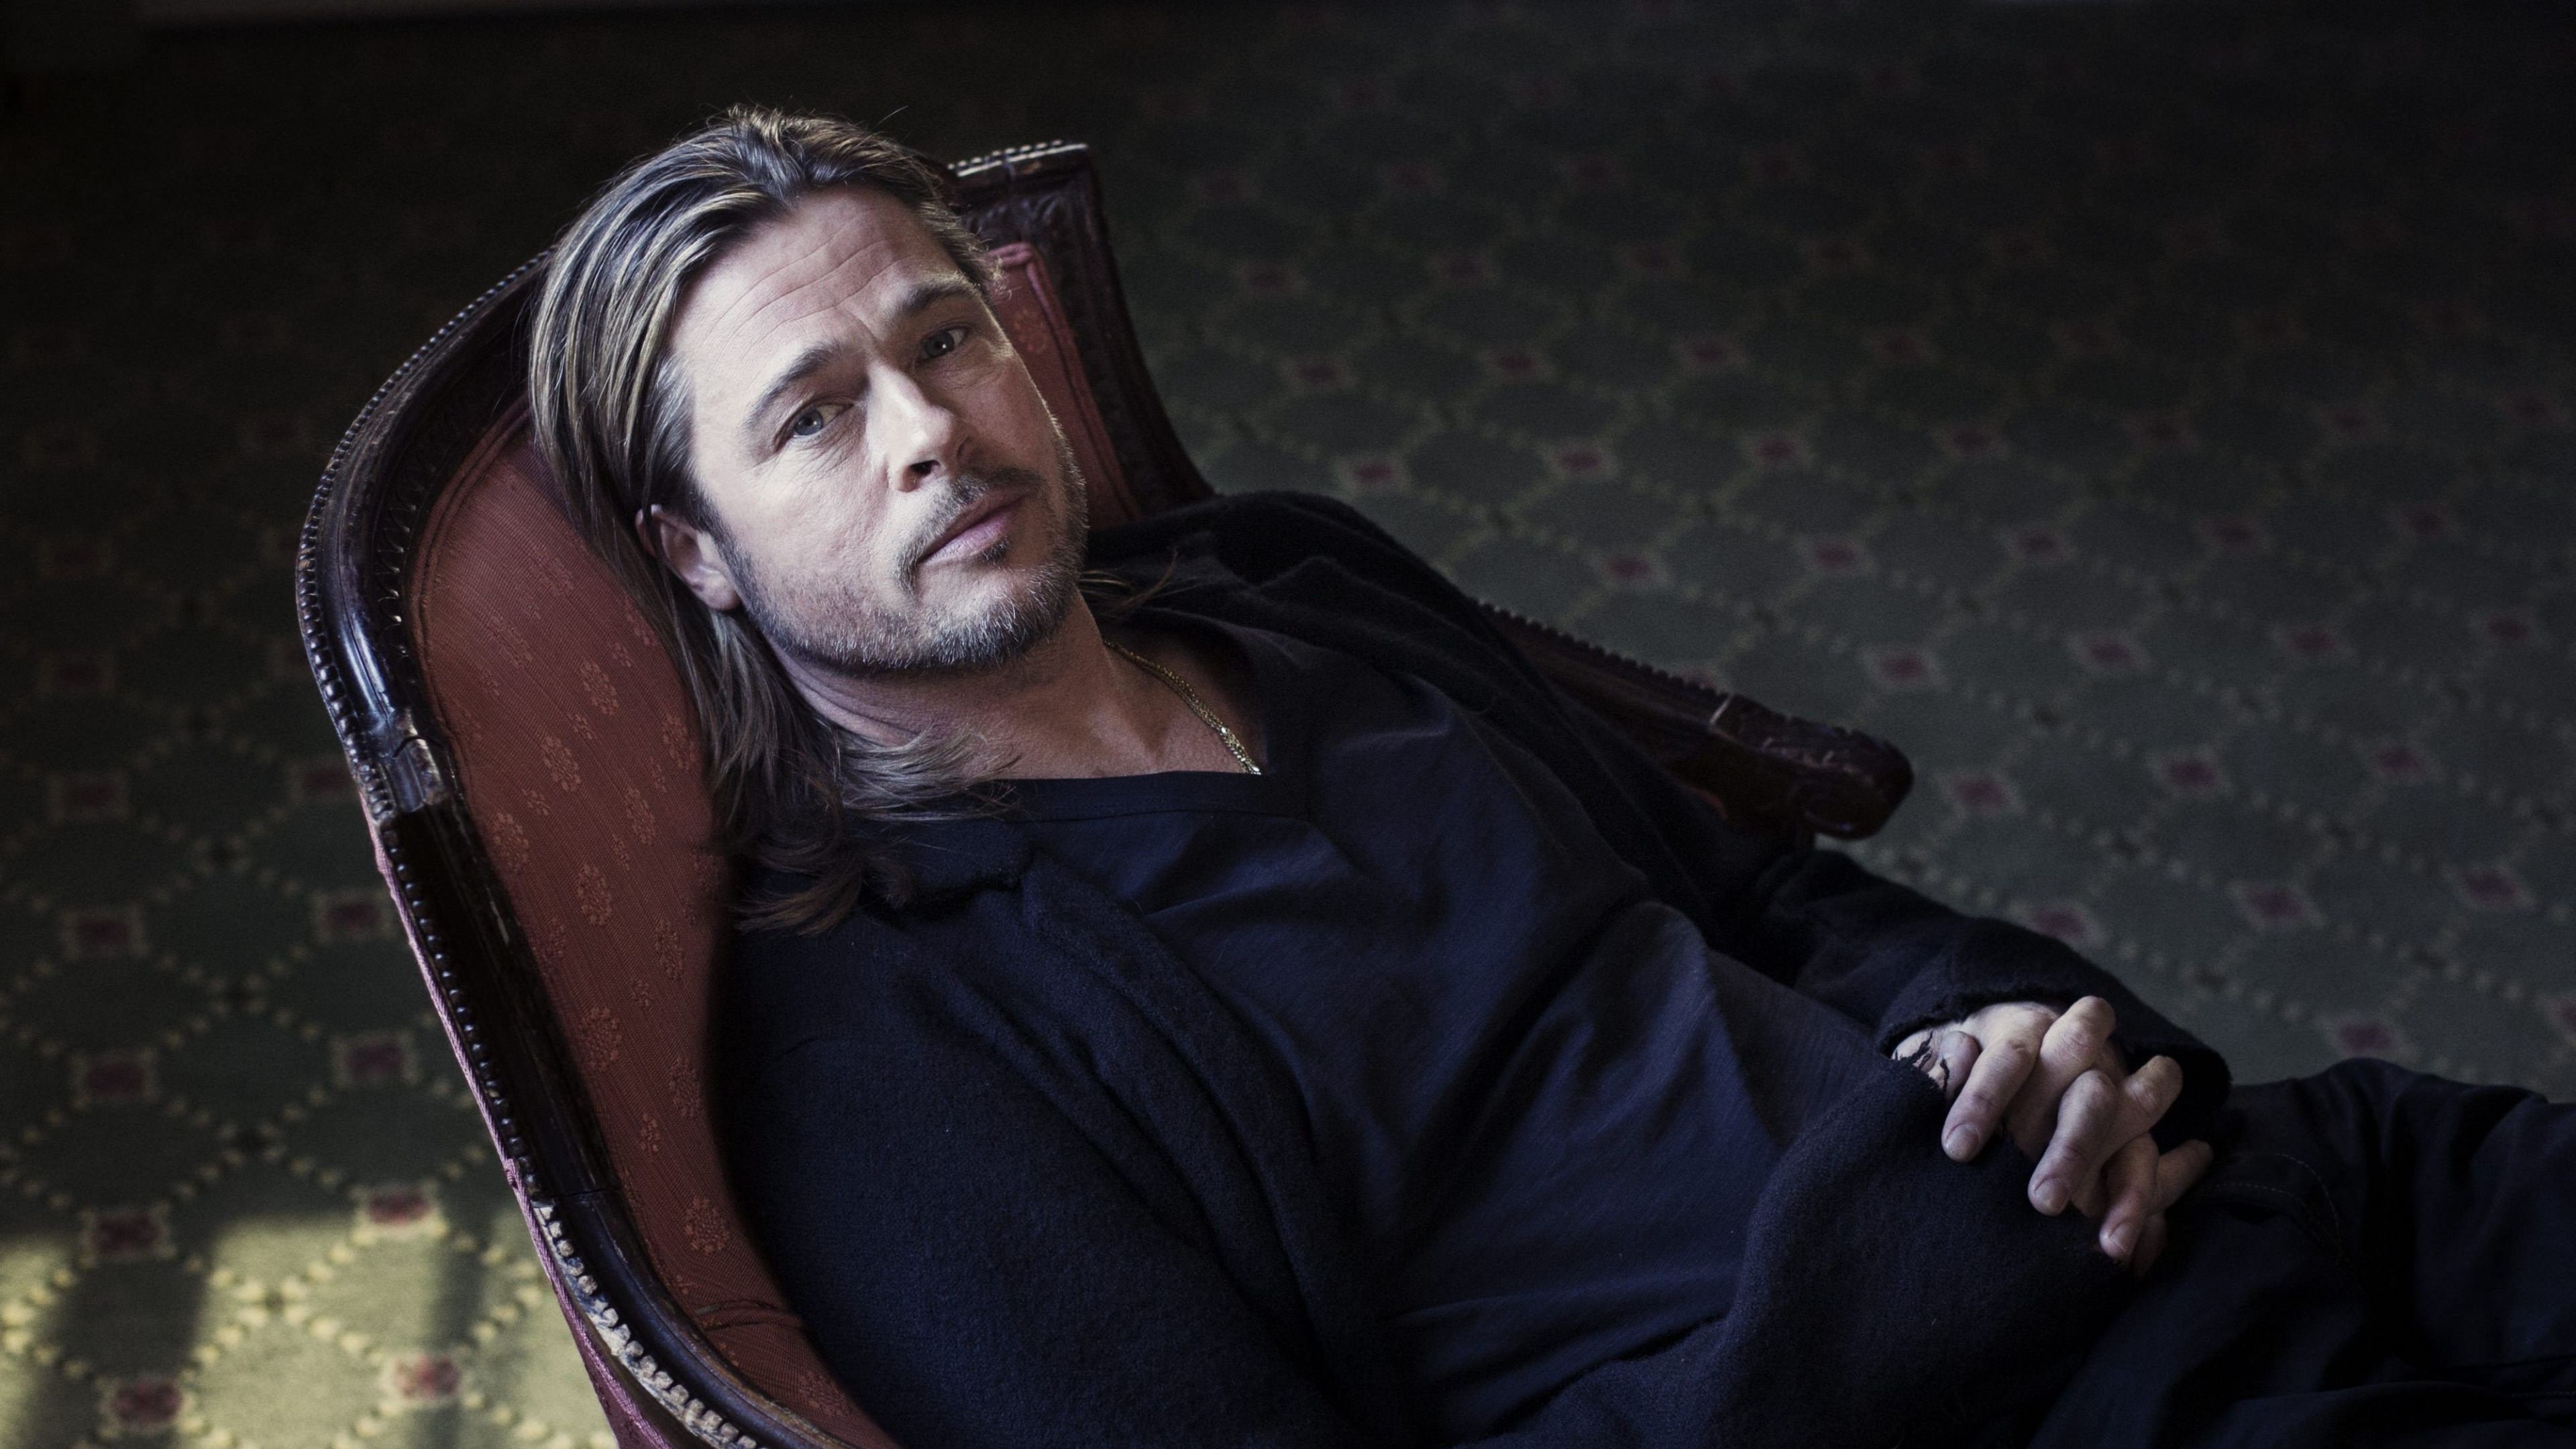 Brad Pitt Sitting On Chair Wallpaper for Desktop 4K 3840x2160